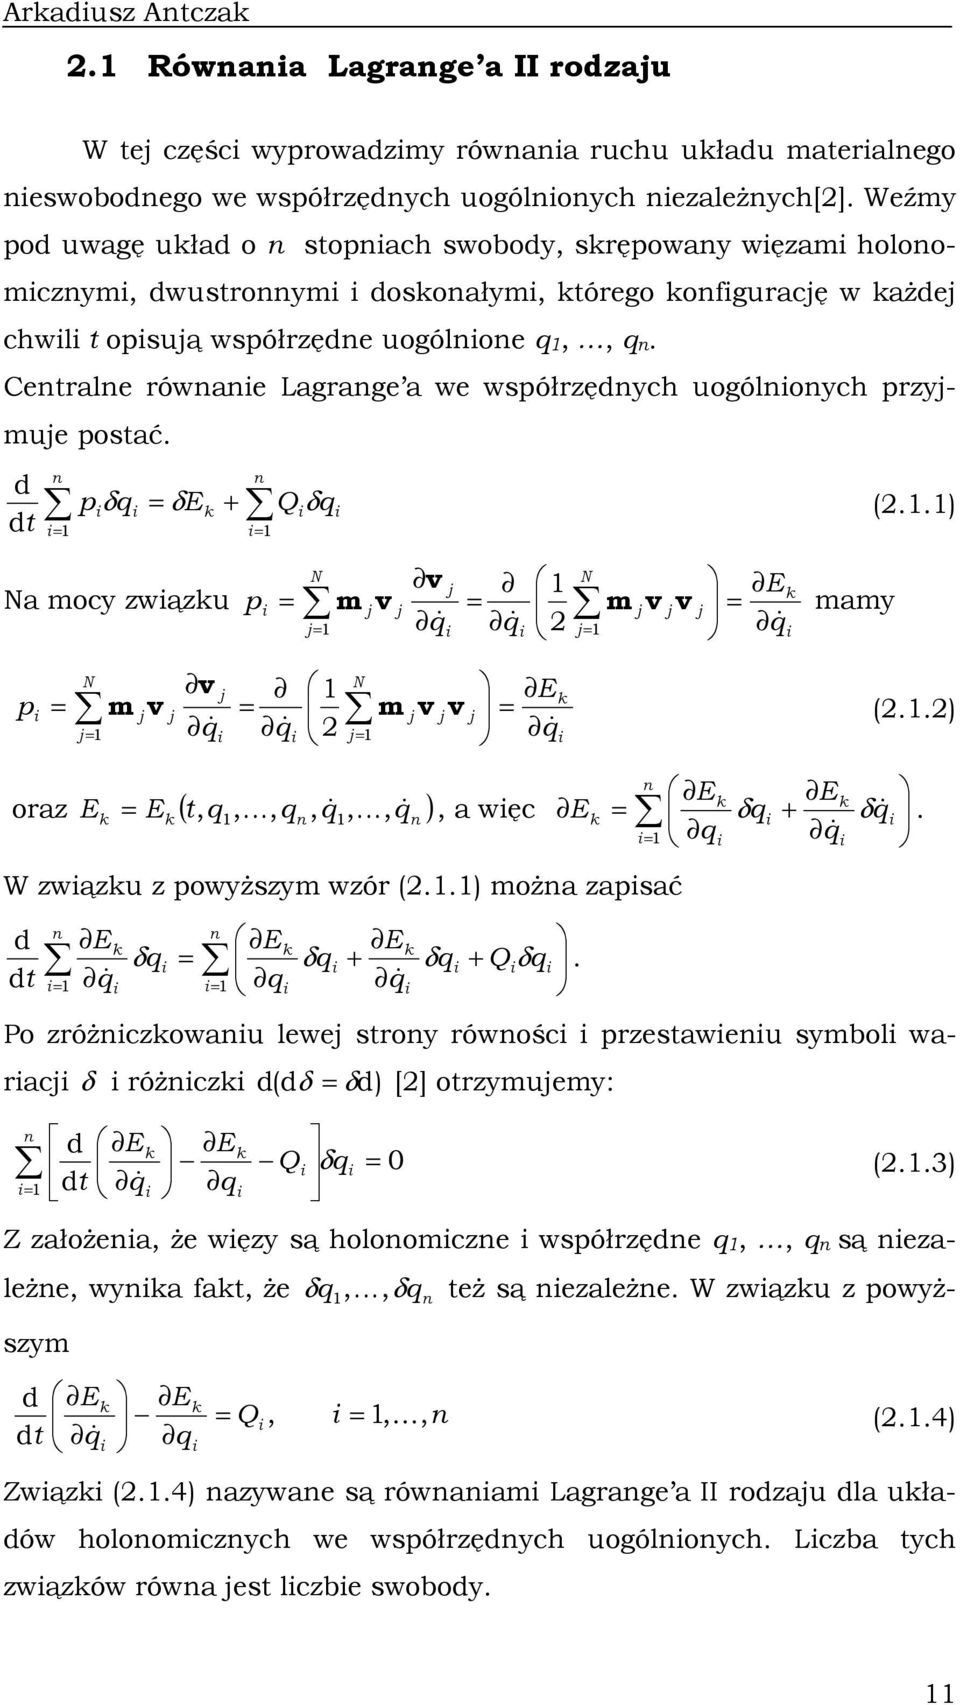 Cetrale rówae Lagrage a we współrzędych uogóloych przyjmuje postać. + Q E p t d d δ δ δ (..) Na mocy zwązu N j j j j N j j j j E p & & & v m v v v m mamy N j j j j N j j j j E p & & & v m v v v m (.